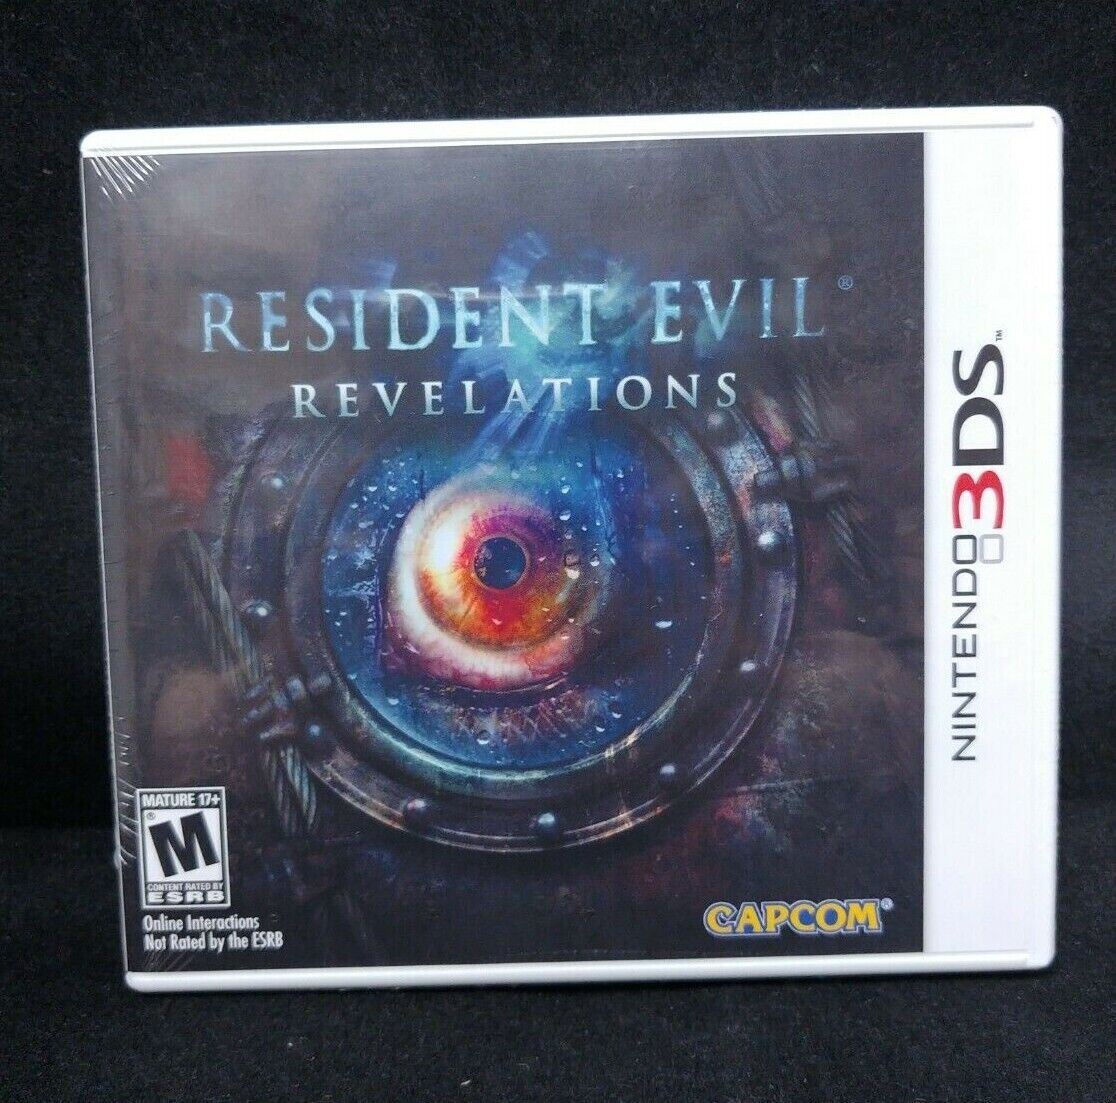 ørn orkester stamtavle Resident Evil Revelations (Nintendo 3DS) BRAND NEW 13388305087 | eBay